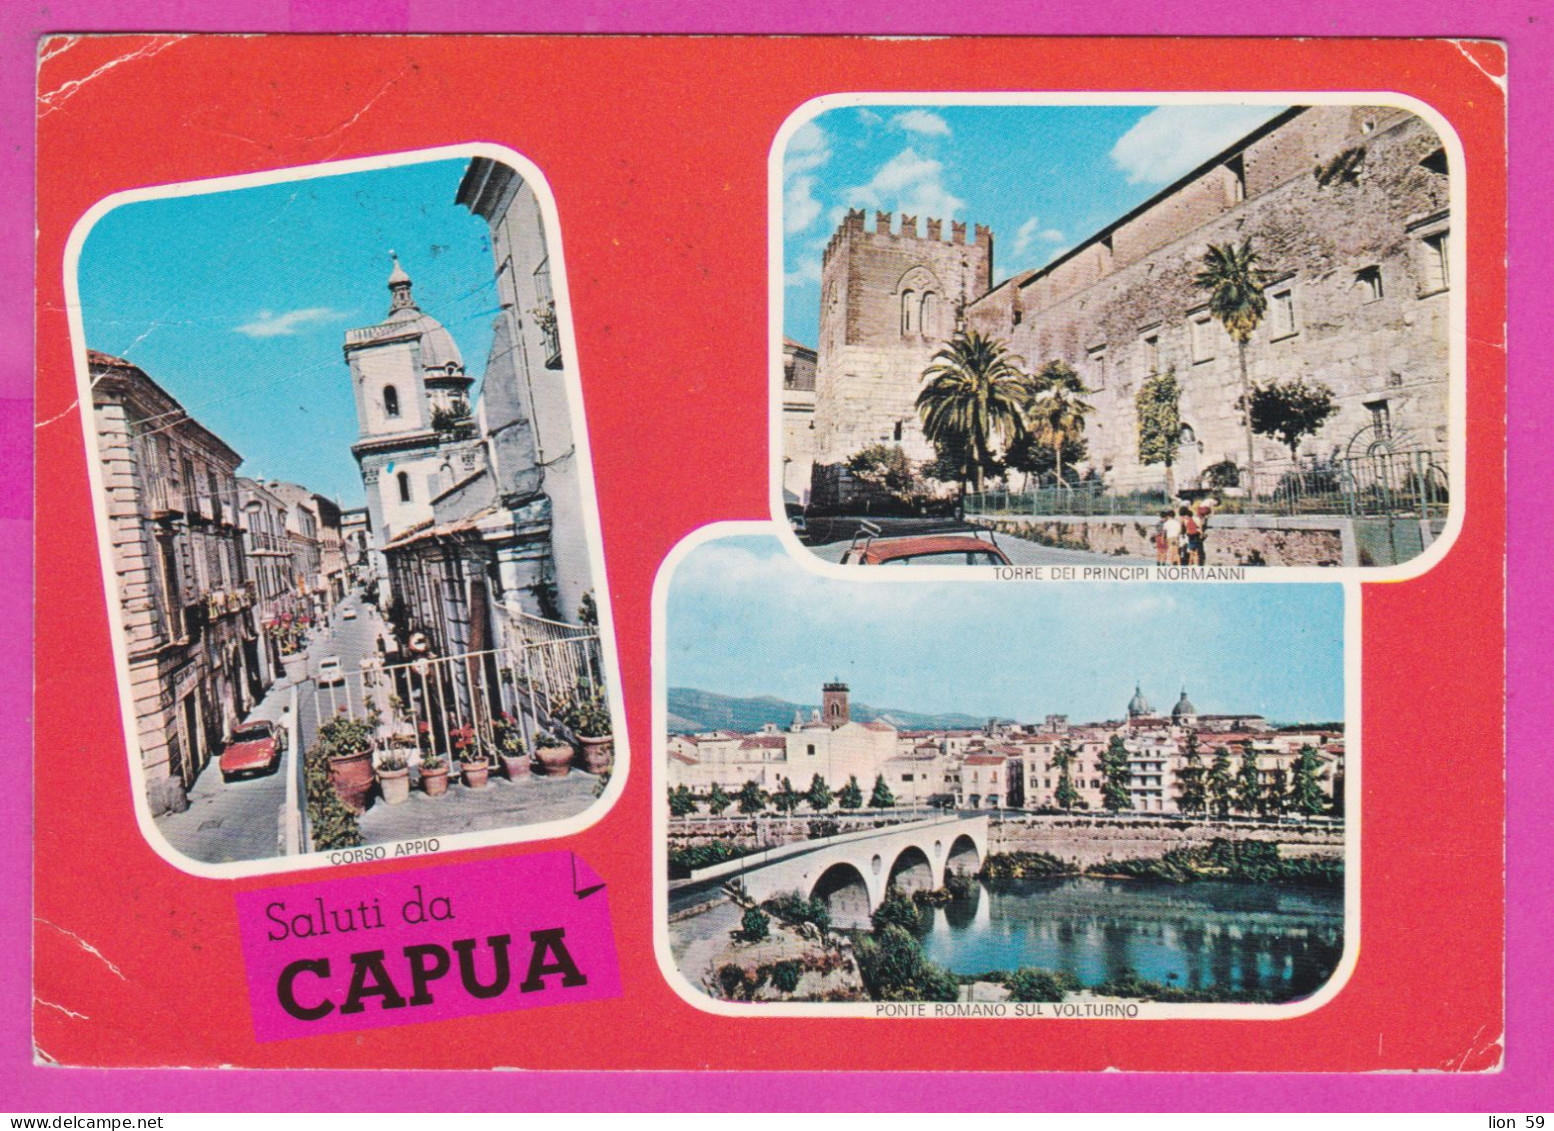 293957 / Italy - Saluti Da CAPUA 3 View Bridge Castle PC 1972 USED  40+50 L Coin Of Syracuse , Italia Italie Italien - 1971-80: Marcophilie